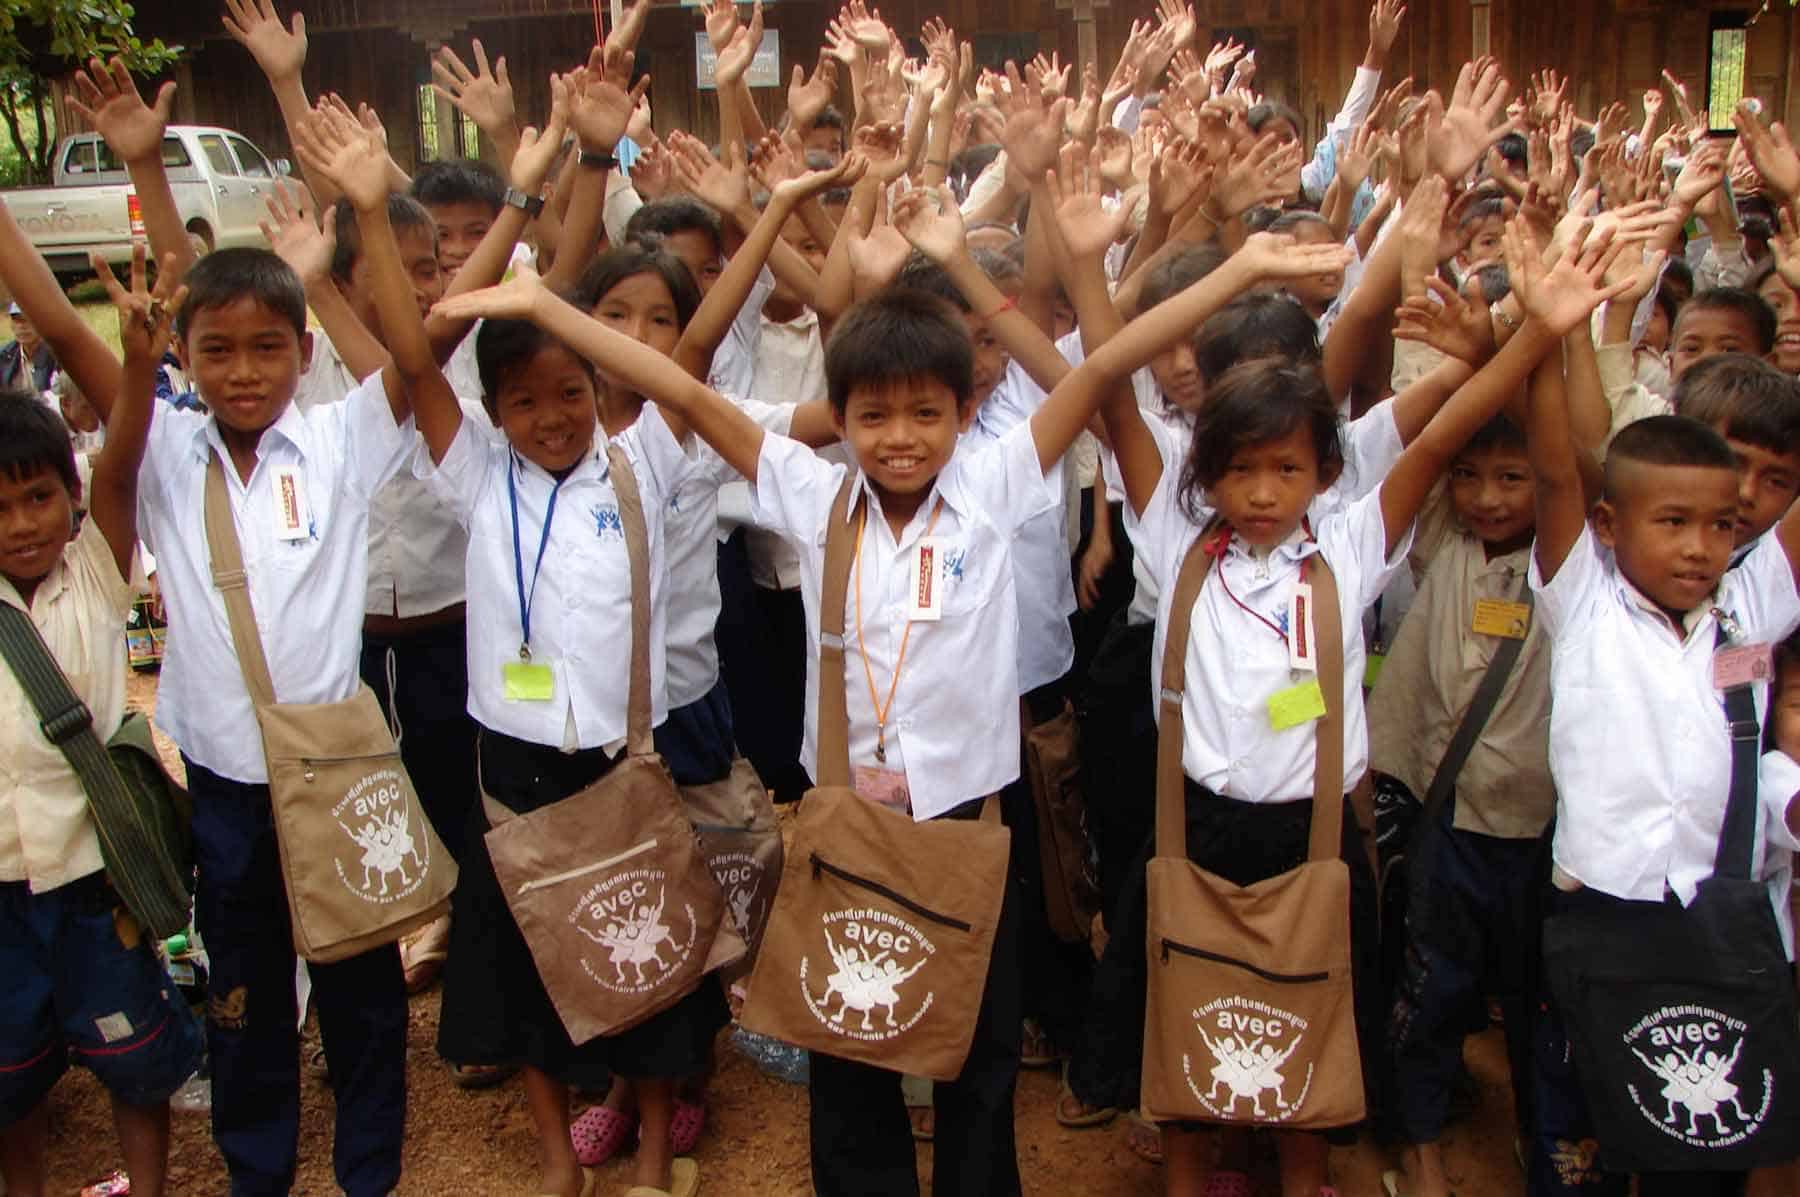 Nous sommes spécialisés dans la localisation et la scolarisation des enfants pauvres. Nous intervenons tous les deux mois dans des écoles publiques au Cambodge, avec de nombreux enfants.